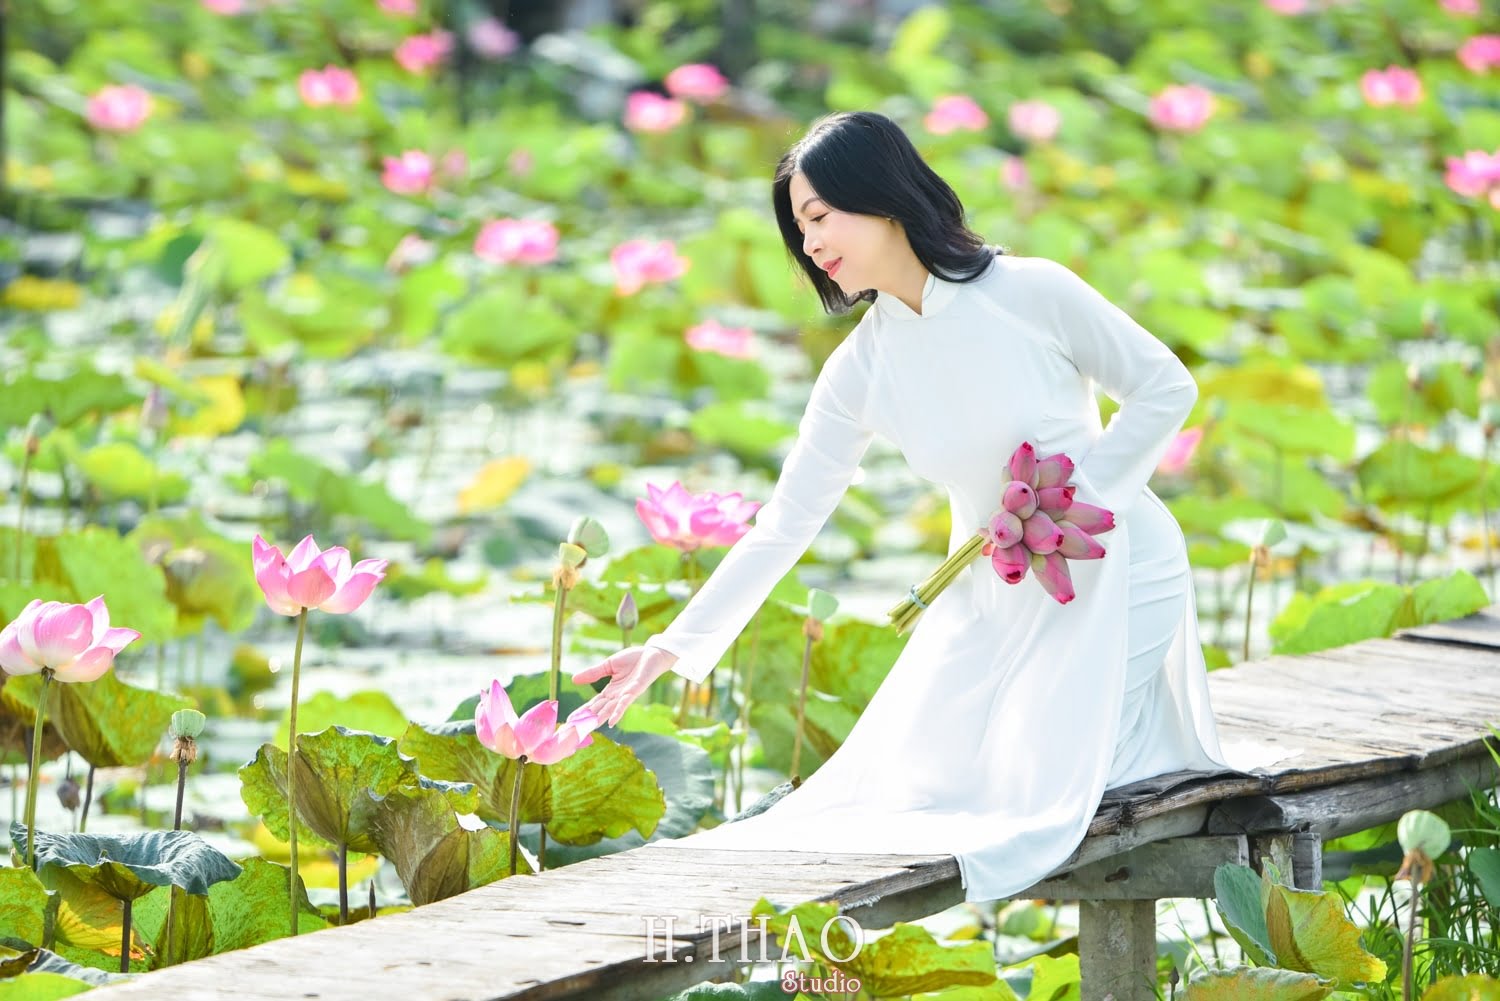 Anh Hoa sen 8 min - #35 cách tạo dáng chụp ảnh chân dung đẹp – HThao Studio